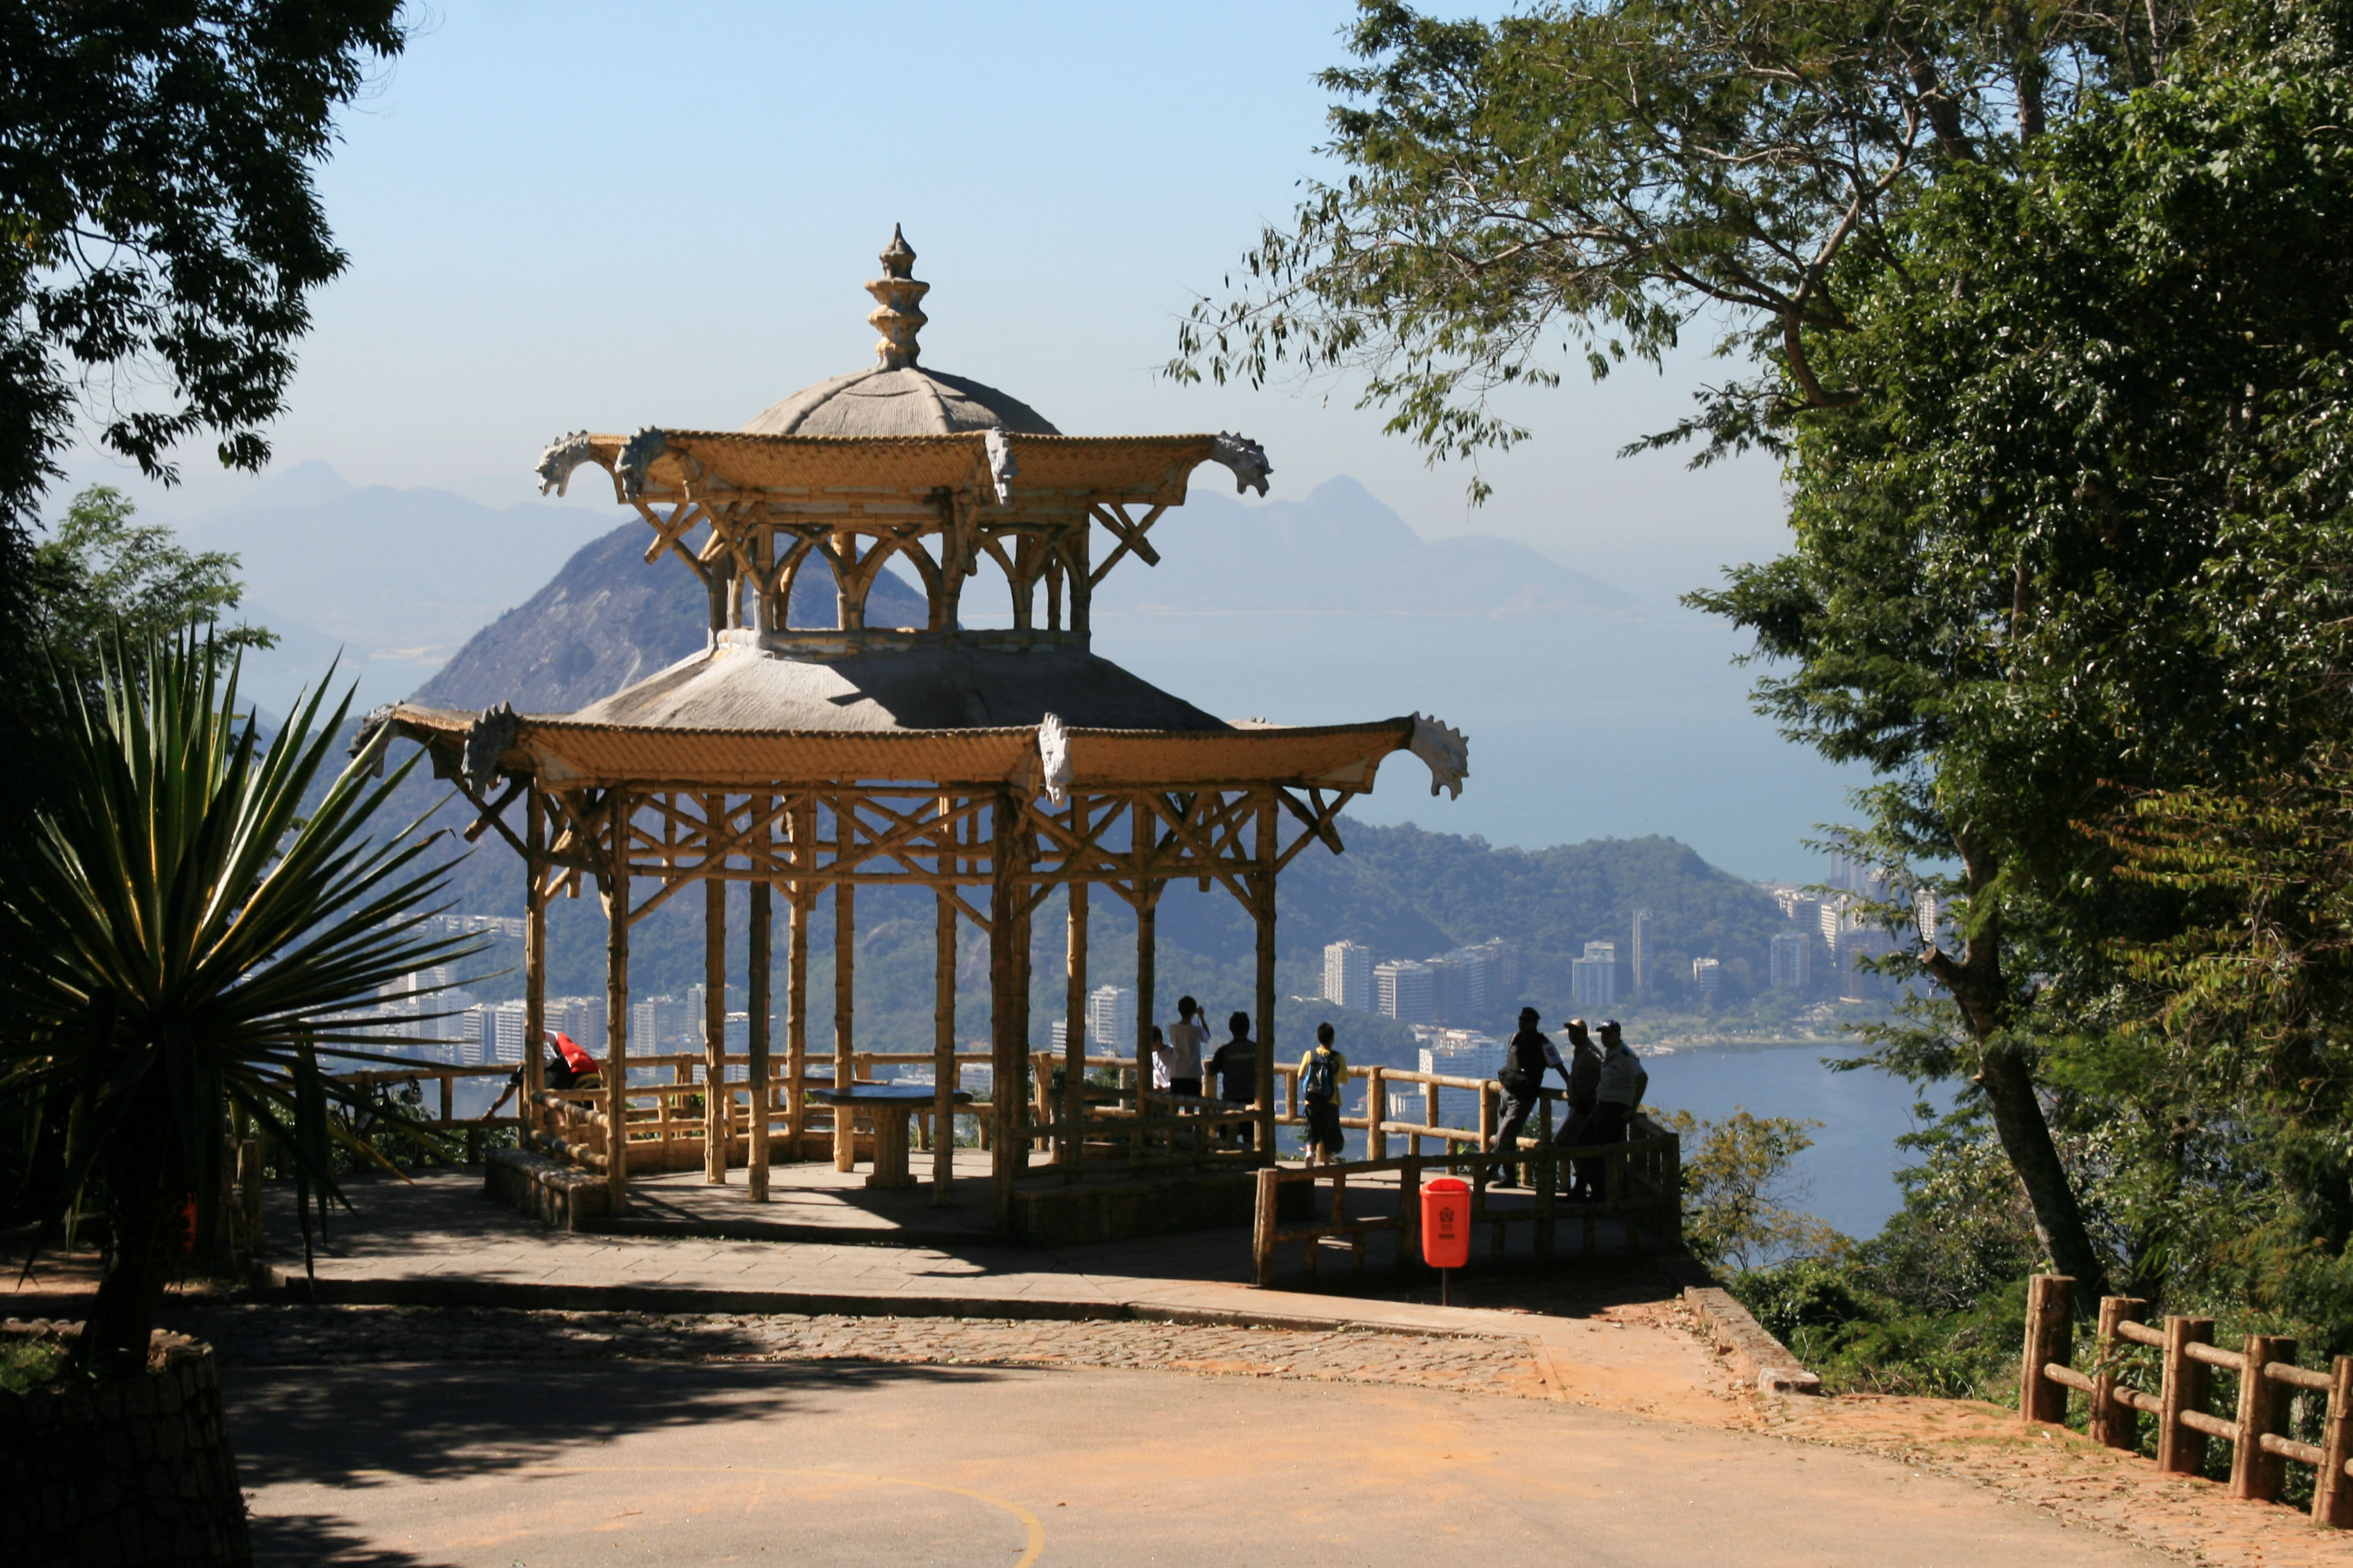 Trilhas para fazer no Rio de Janeiro